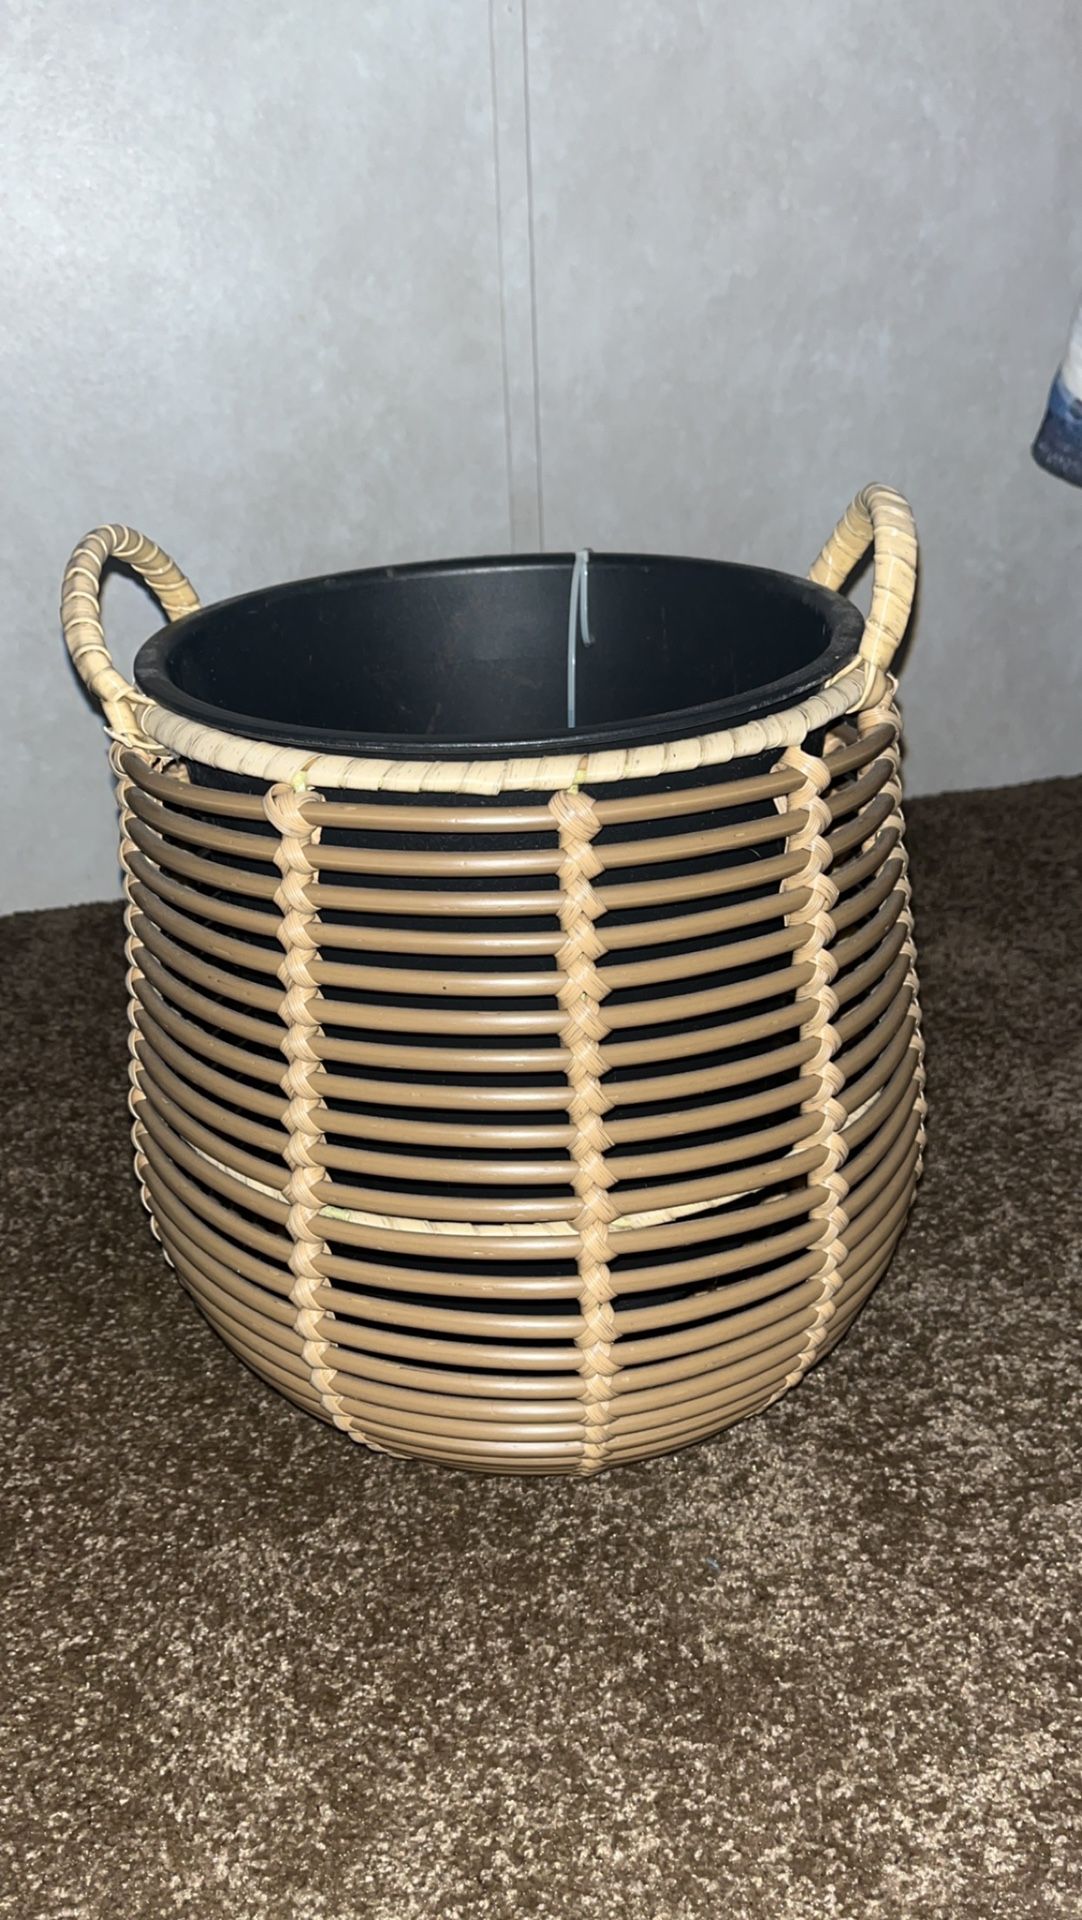 Wicker Plant Basket